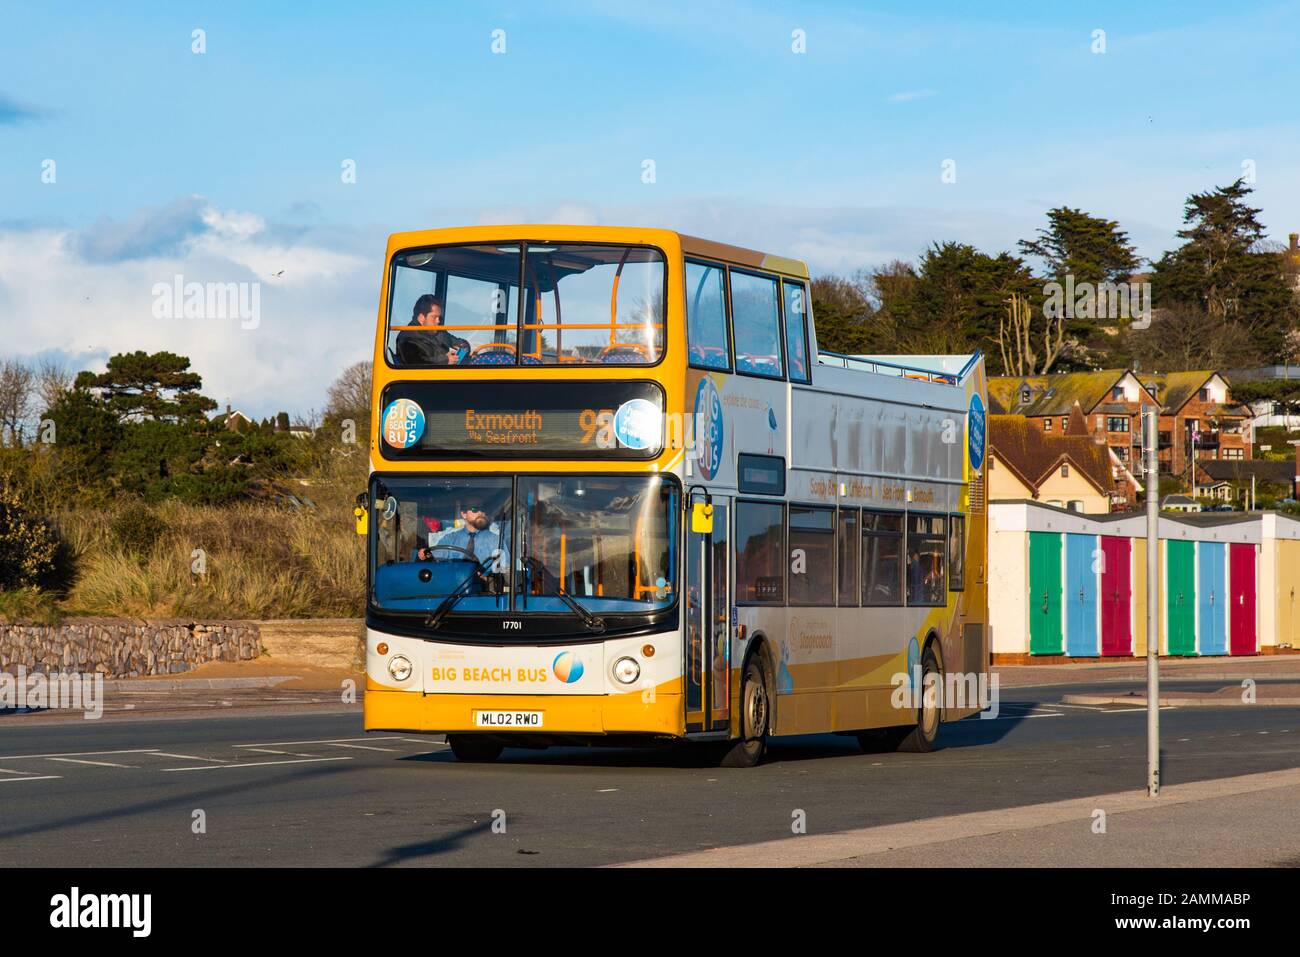 Exmouth, DEVON, Royaume-Uni - 3APR2019: Le Big Beach bus est un bus à toit ouvert qui relie Exmouth et Devon Cliffs Holiday Park à Sandy Bay. Banque D'Images